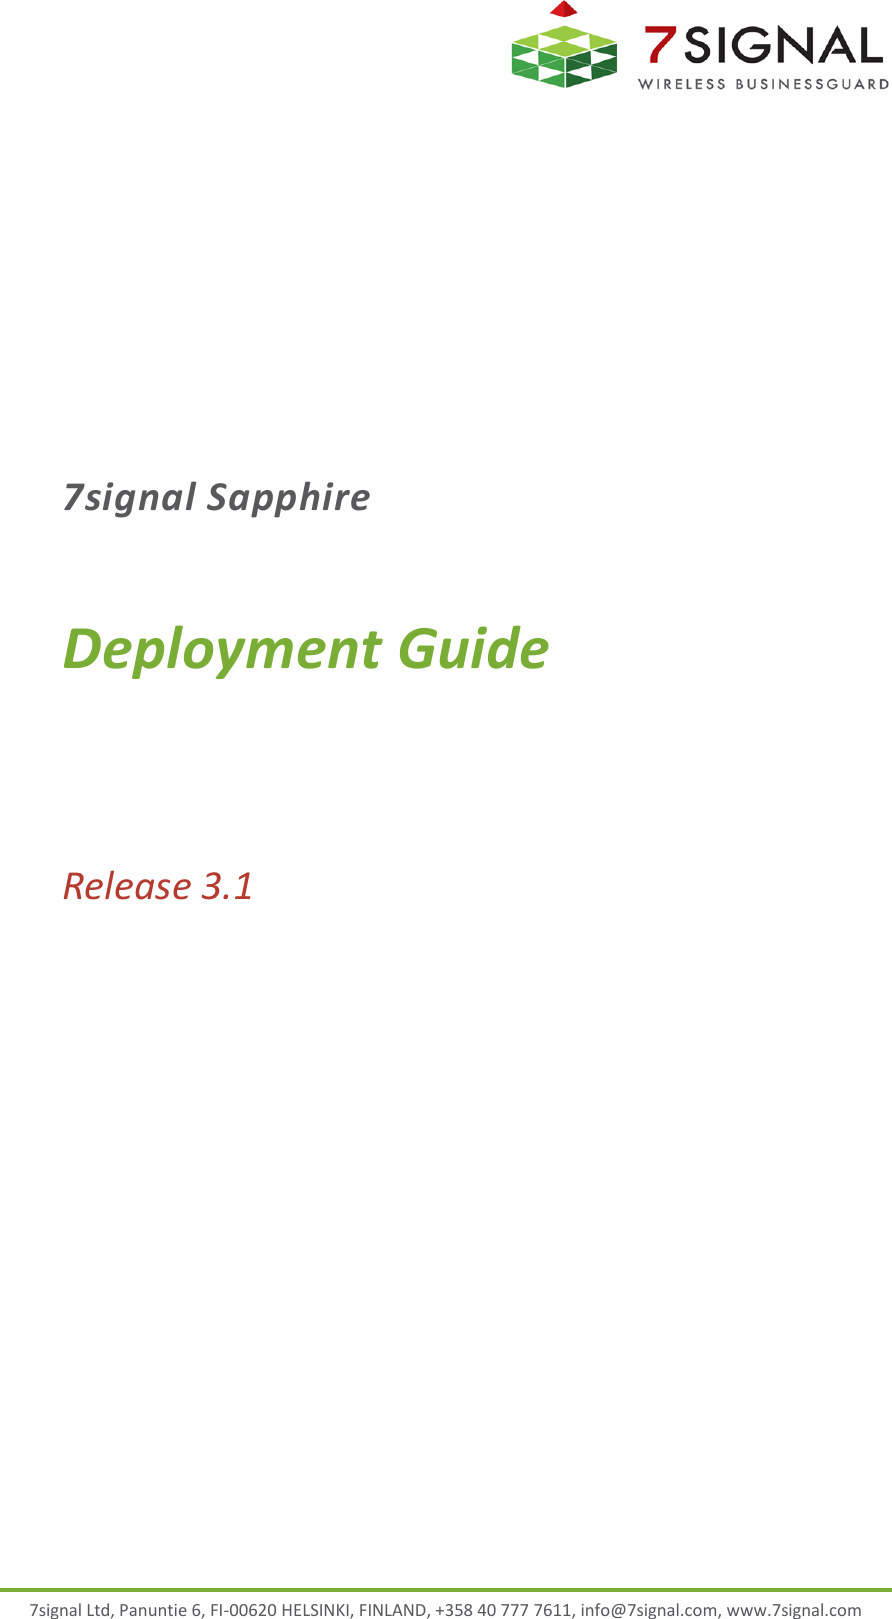  7signal Ltd, Panuntie 6, FI-00620 HELSINKI, FINLAND, +358 40 777 7611, info@7signal.com, www.7signal.com 7signal Sapphire Deployment Guide Release 3.1  